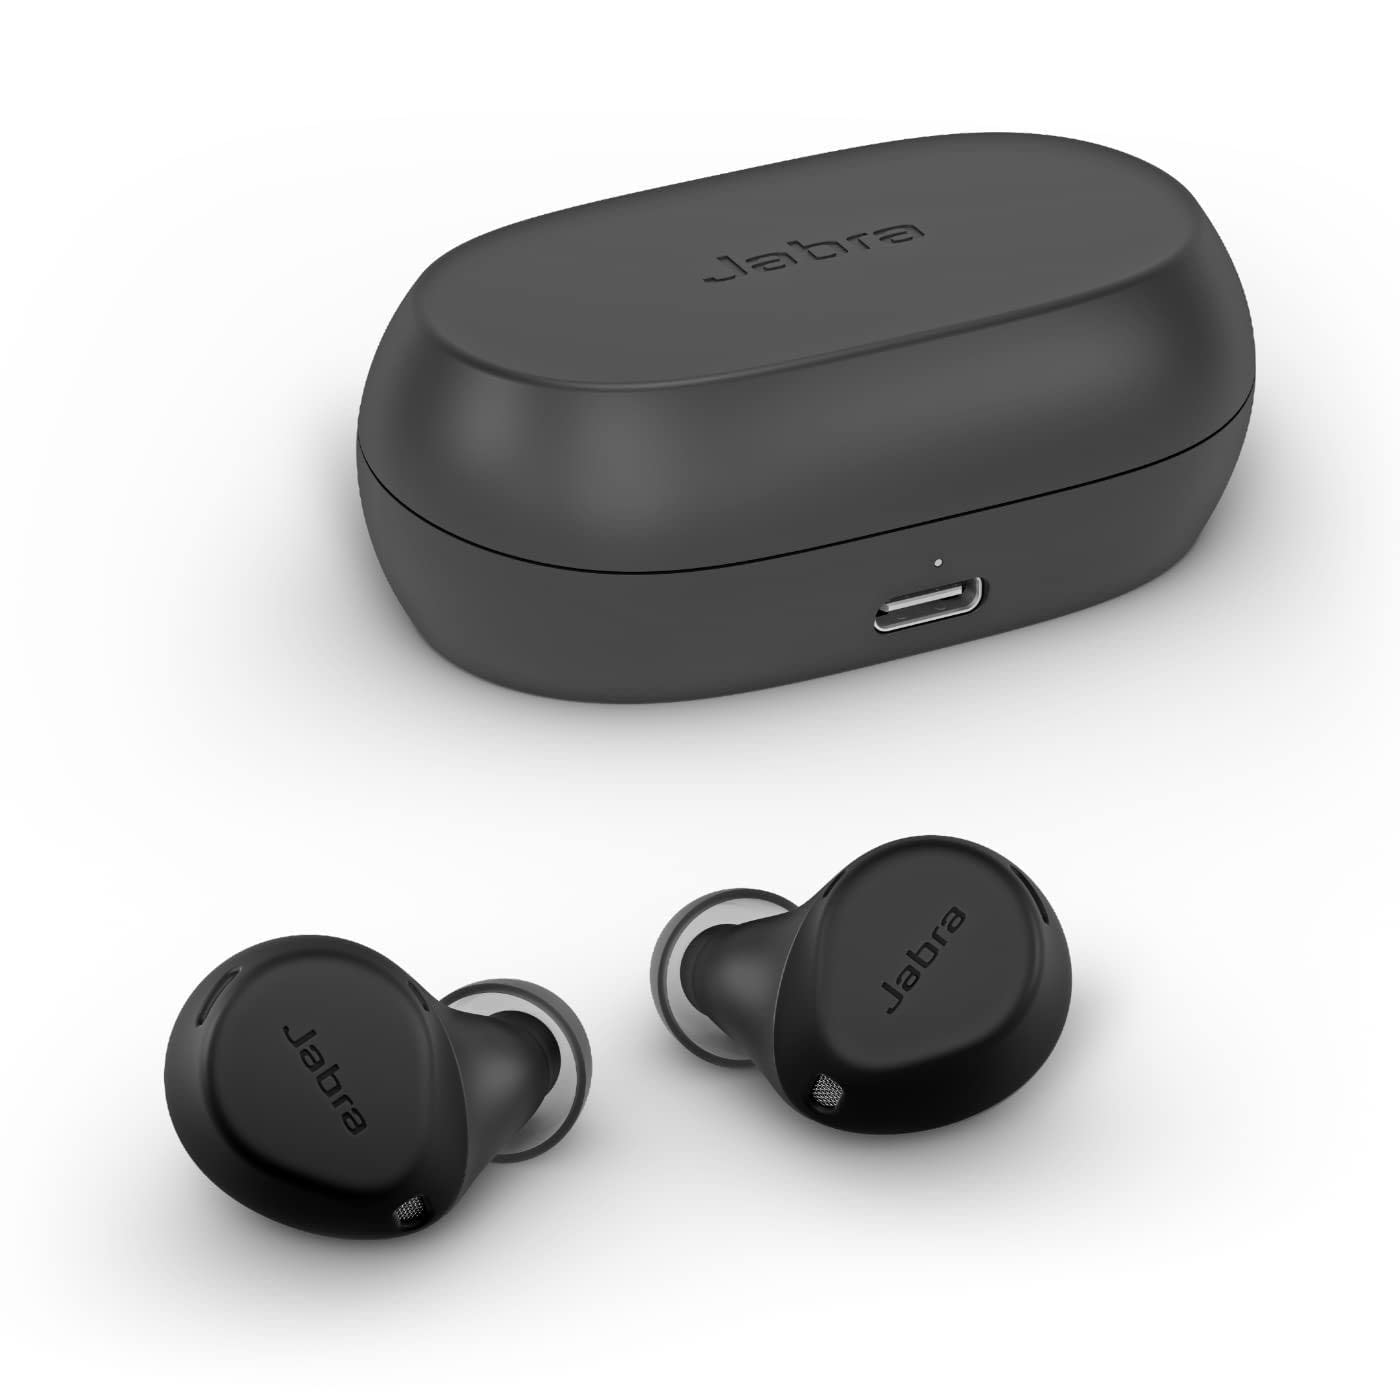 Jabra Fones de ouvido Bluetooth Elite 7 Pro - cancelamento de ruído ativo ajustável Buds sem fio verdadeiros em um design compacto com tecnologia de voz multissensor para chamadas nítidas